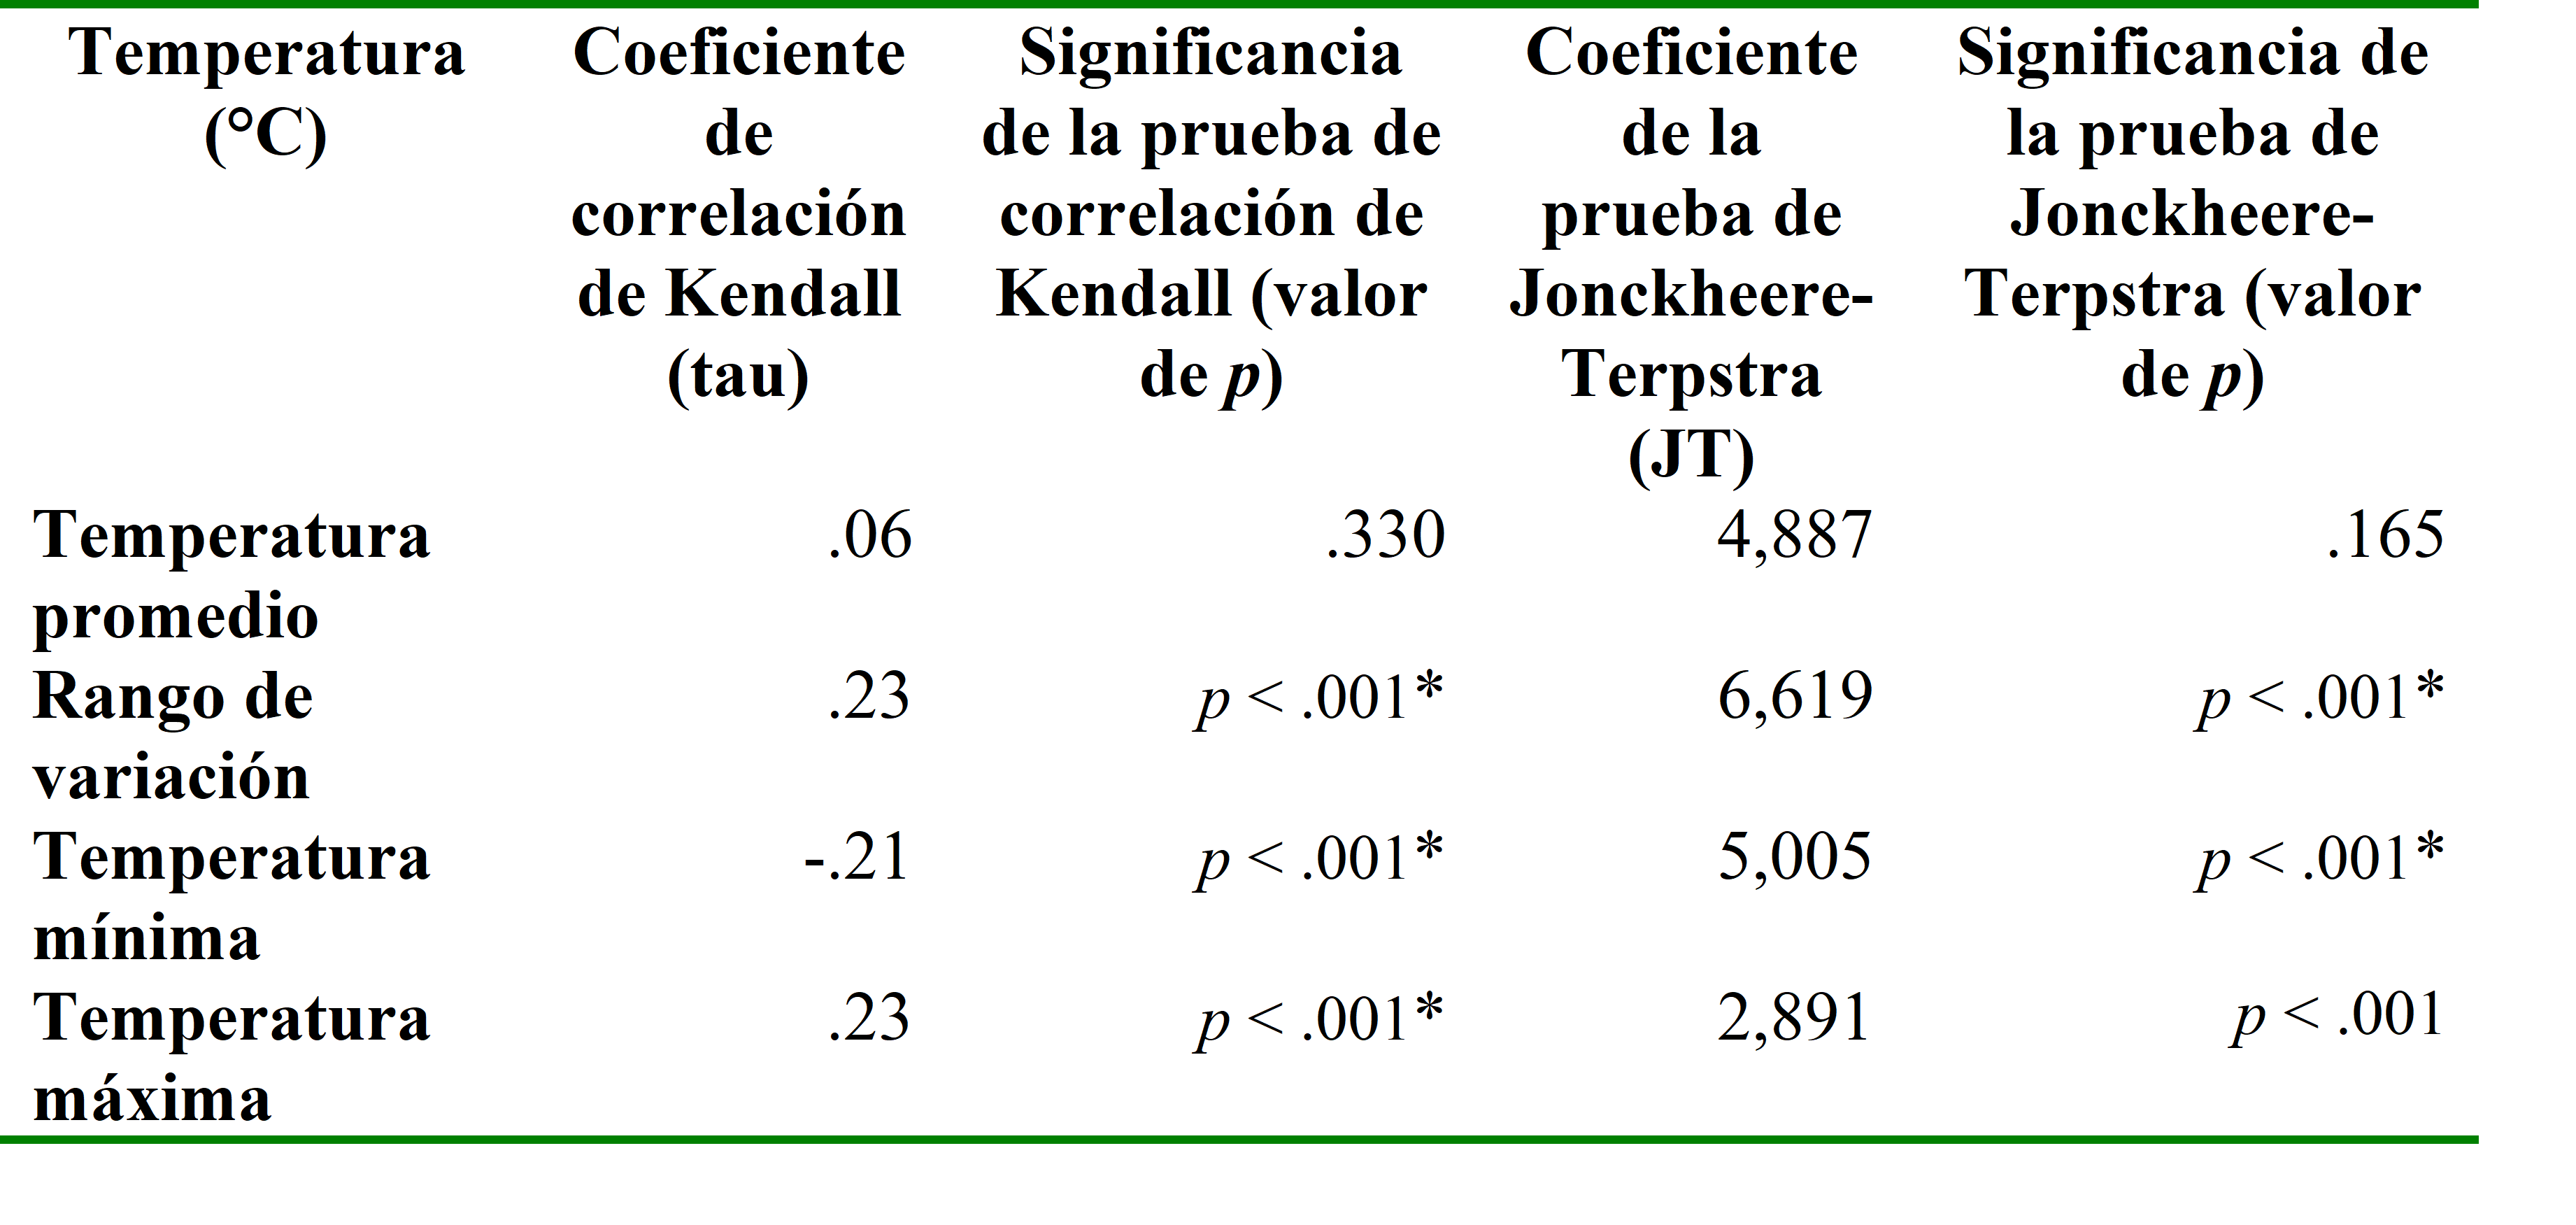 Resultados del análisis de la prueba de
correlación de Kendall y la prueba de Jonckheere-Terpstra
para los valores del DIx con los componentes de la
temperatura.